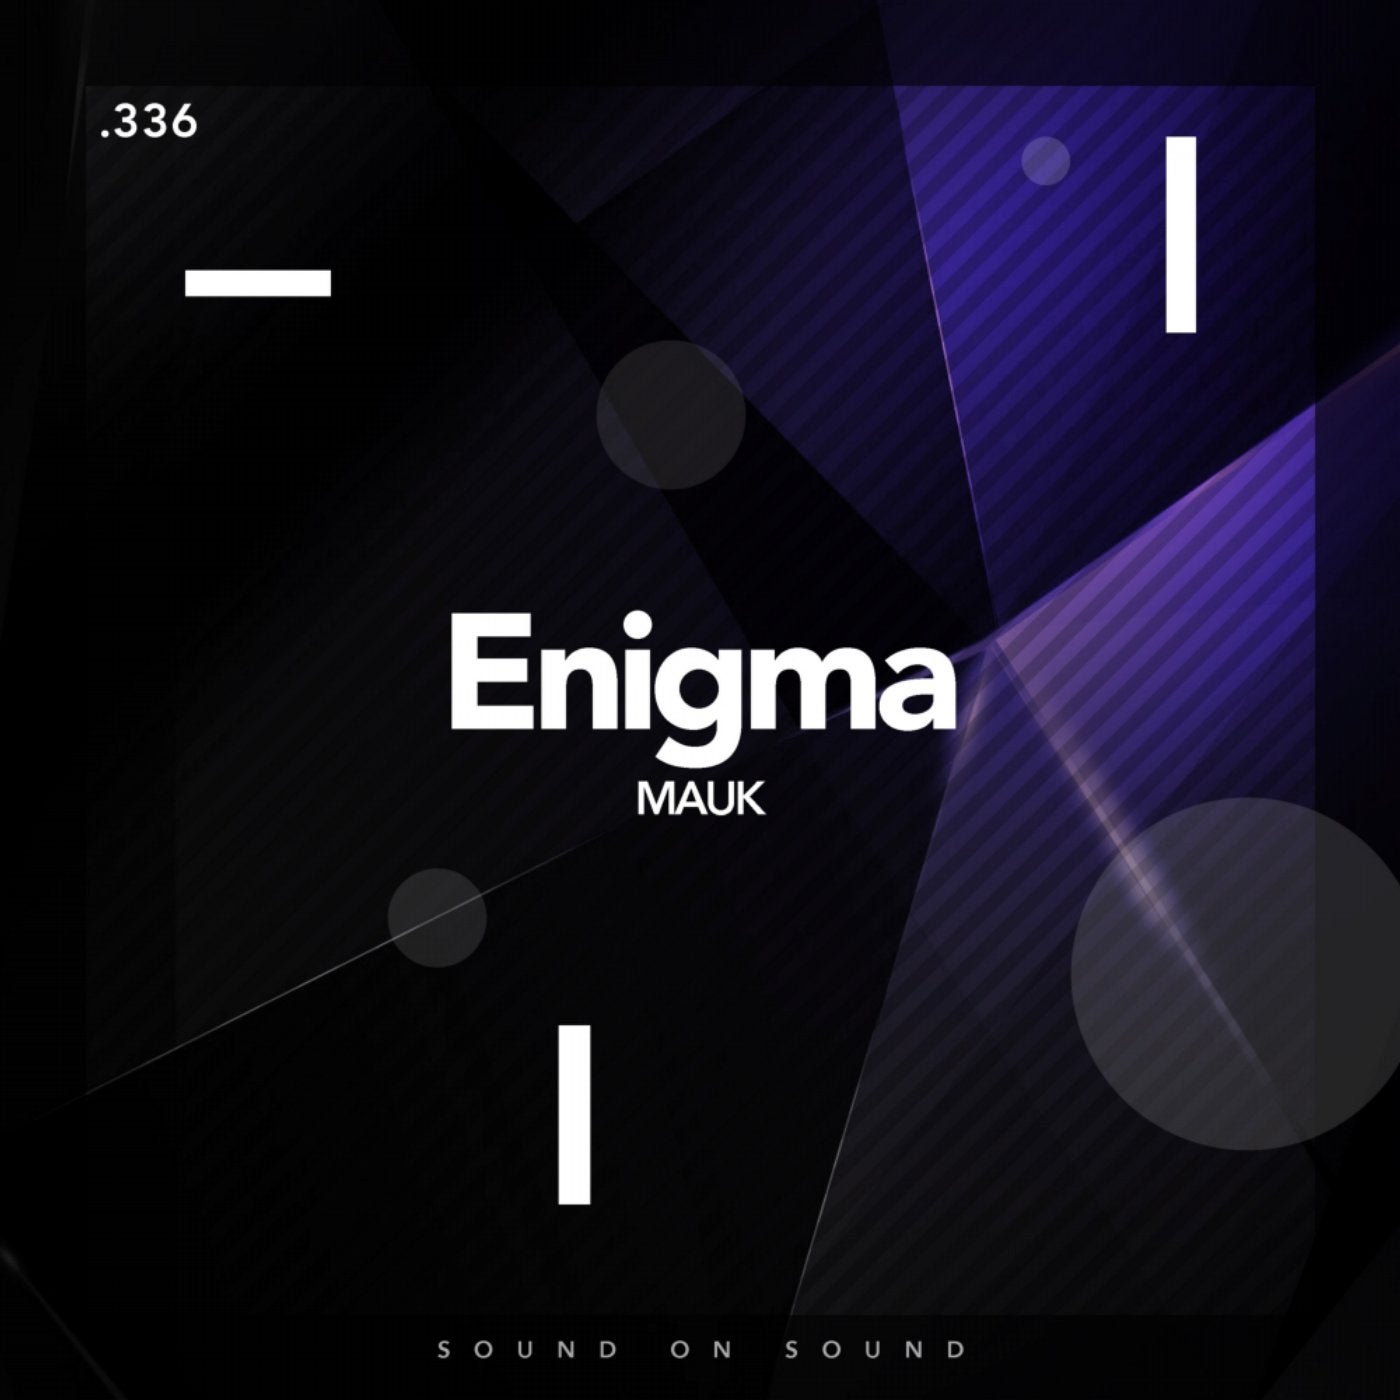 enigma album release dates